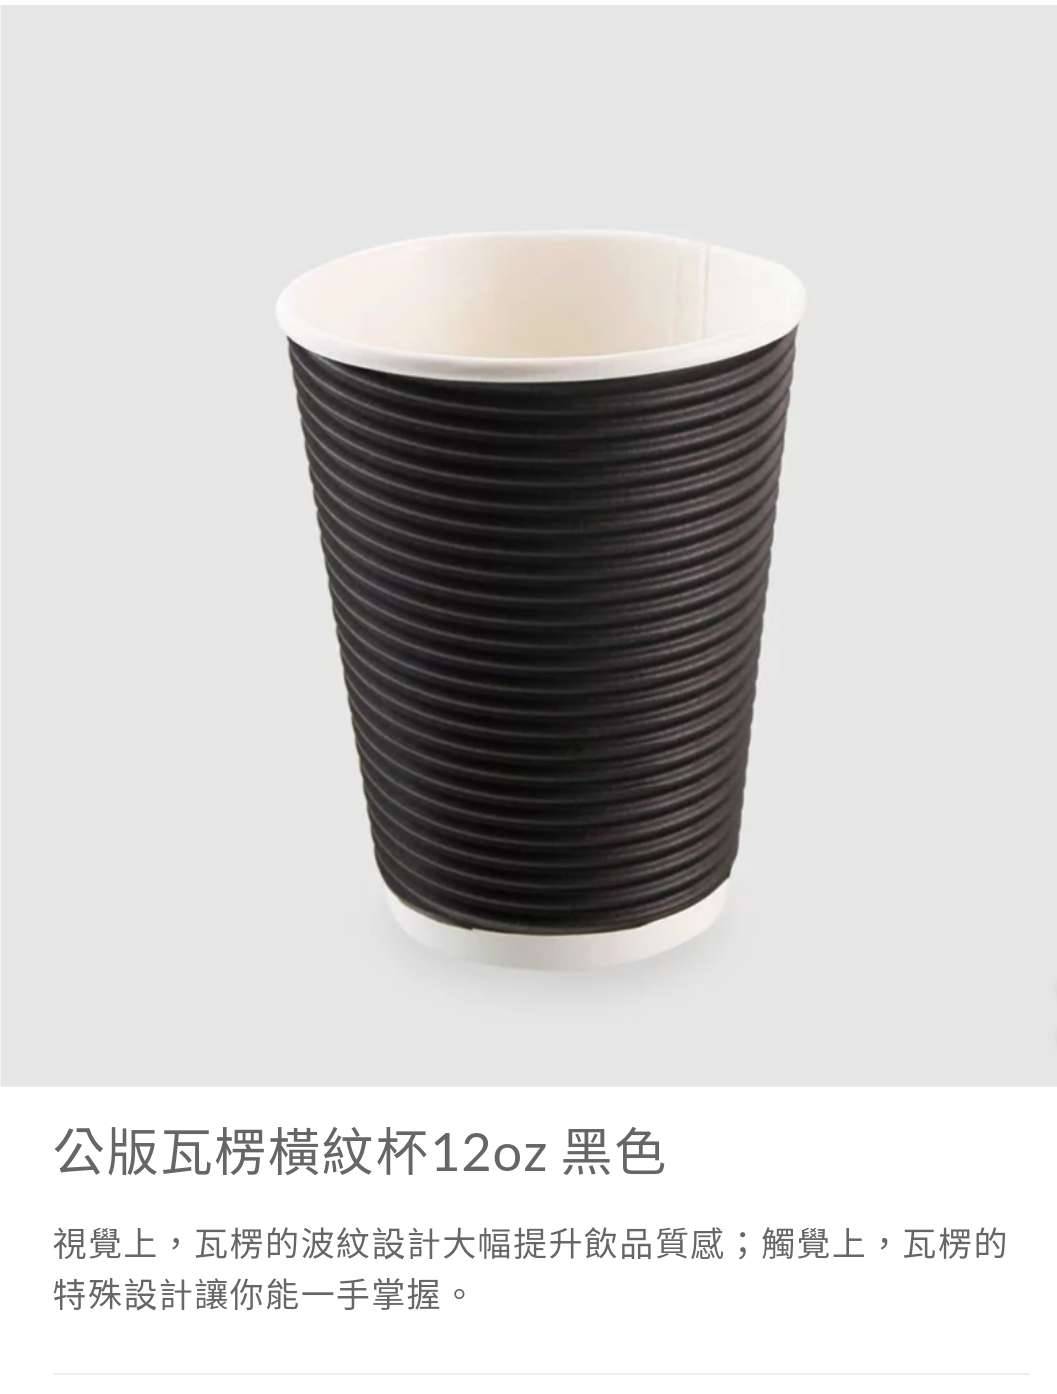 12oz瓦楞橫紋咖啡杯